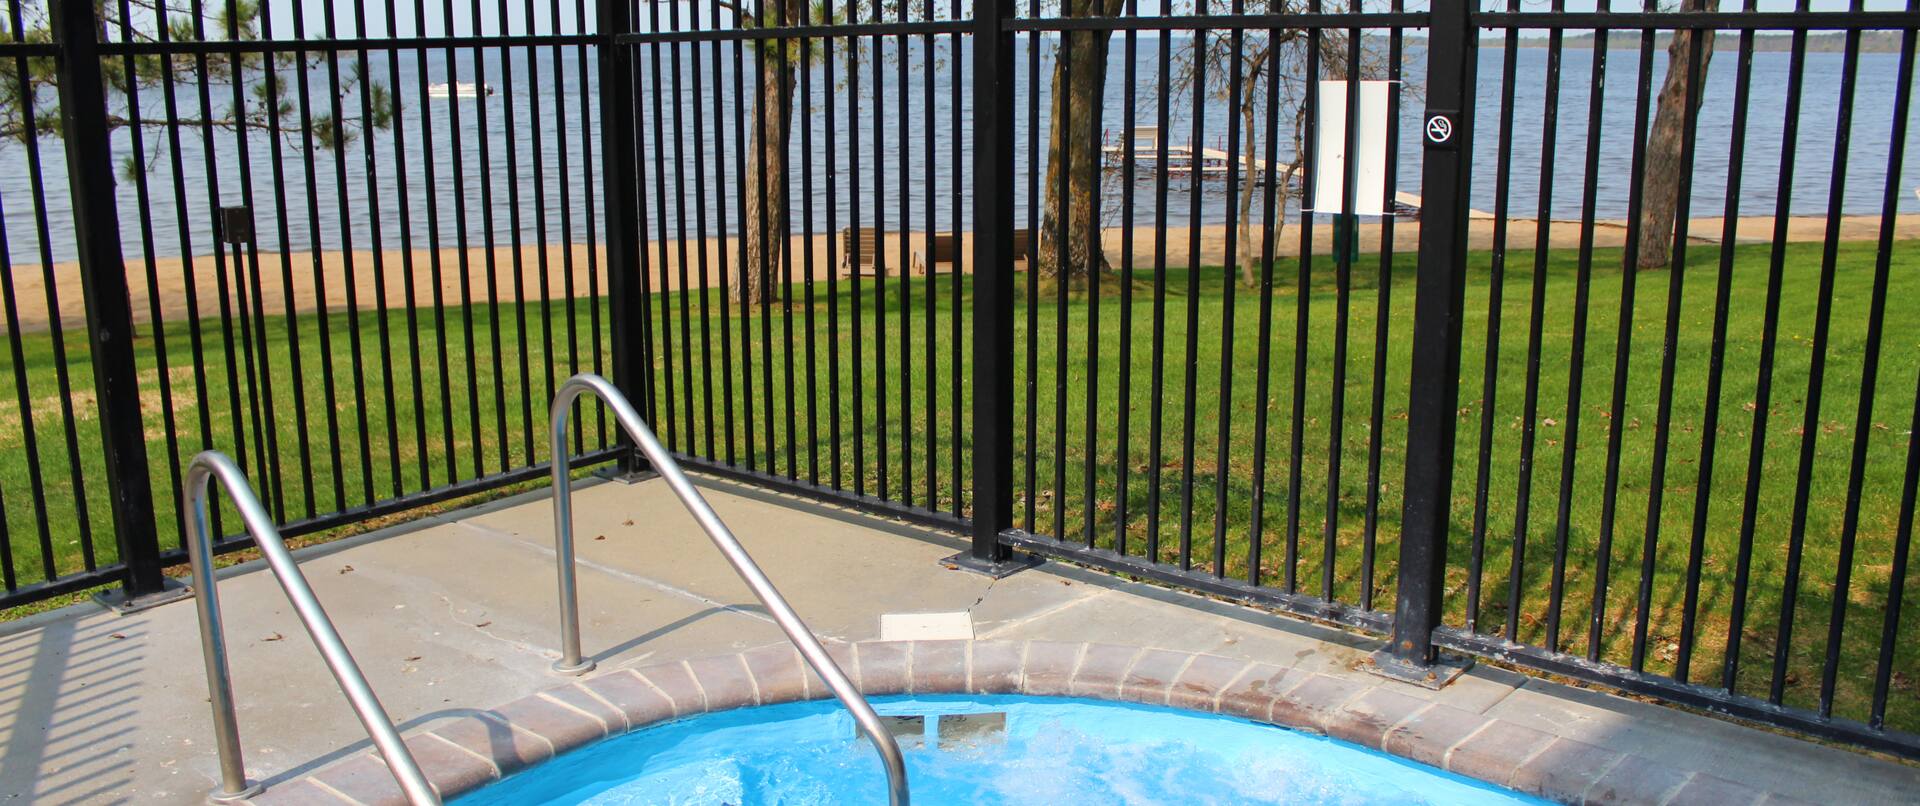 indoor / outdoor pool, outdoor view